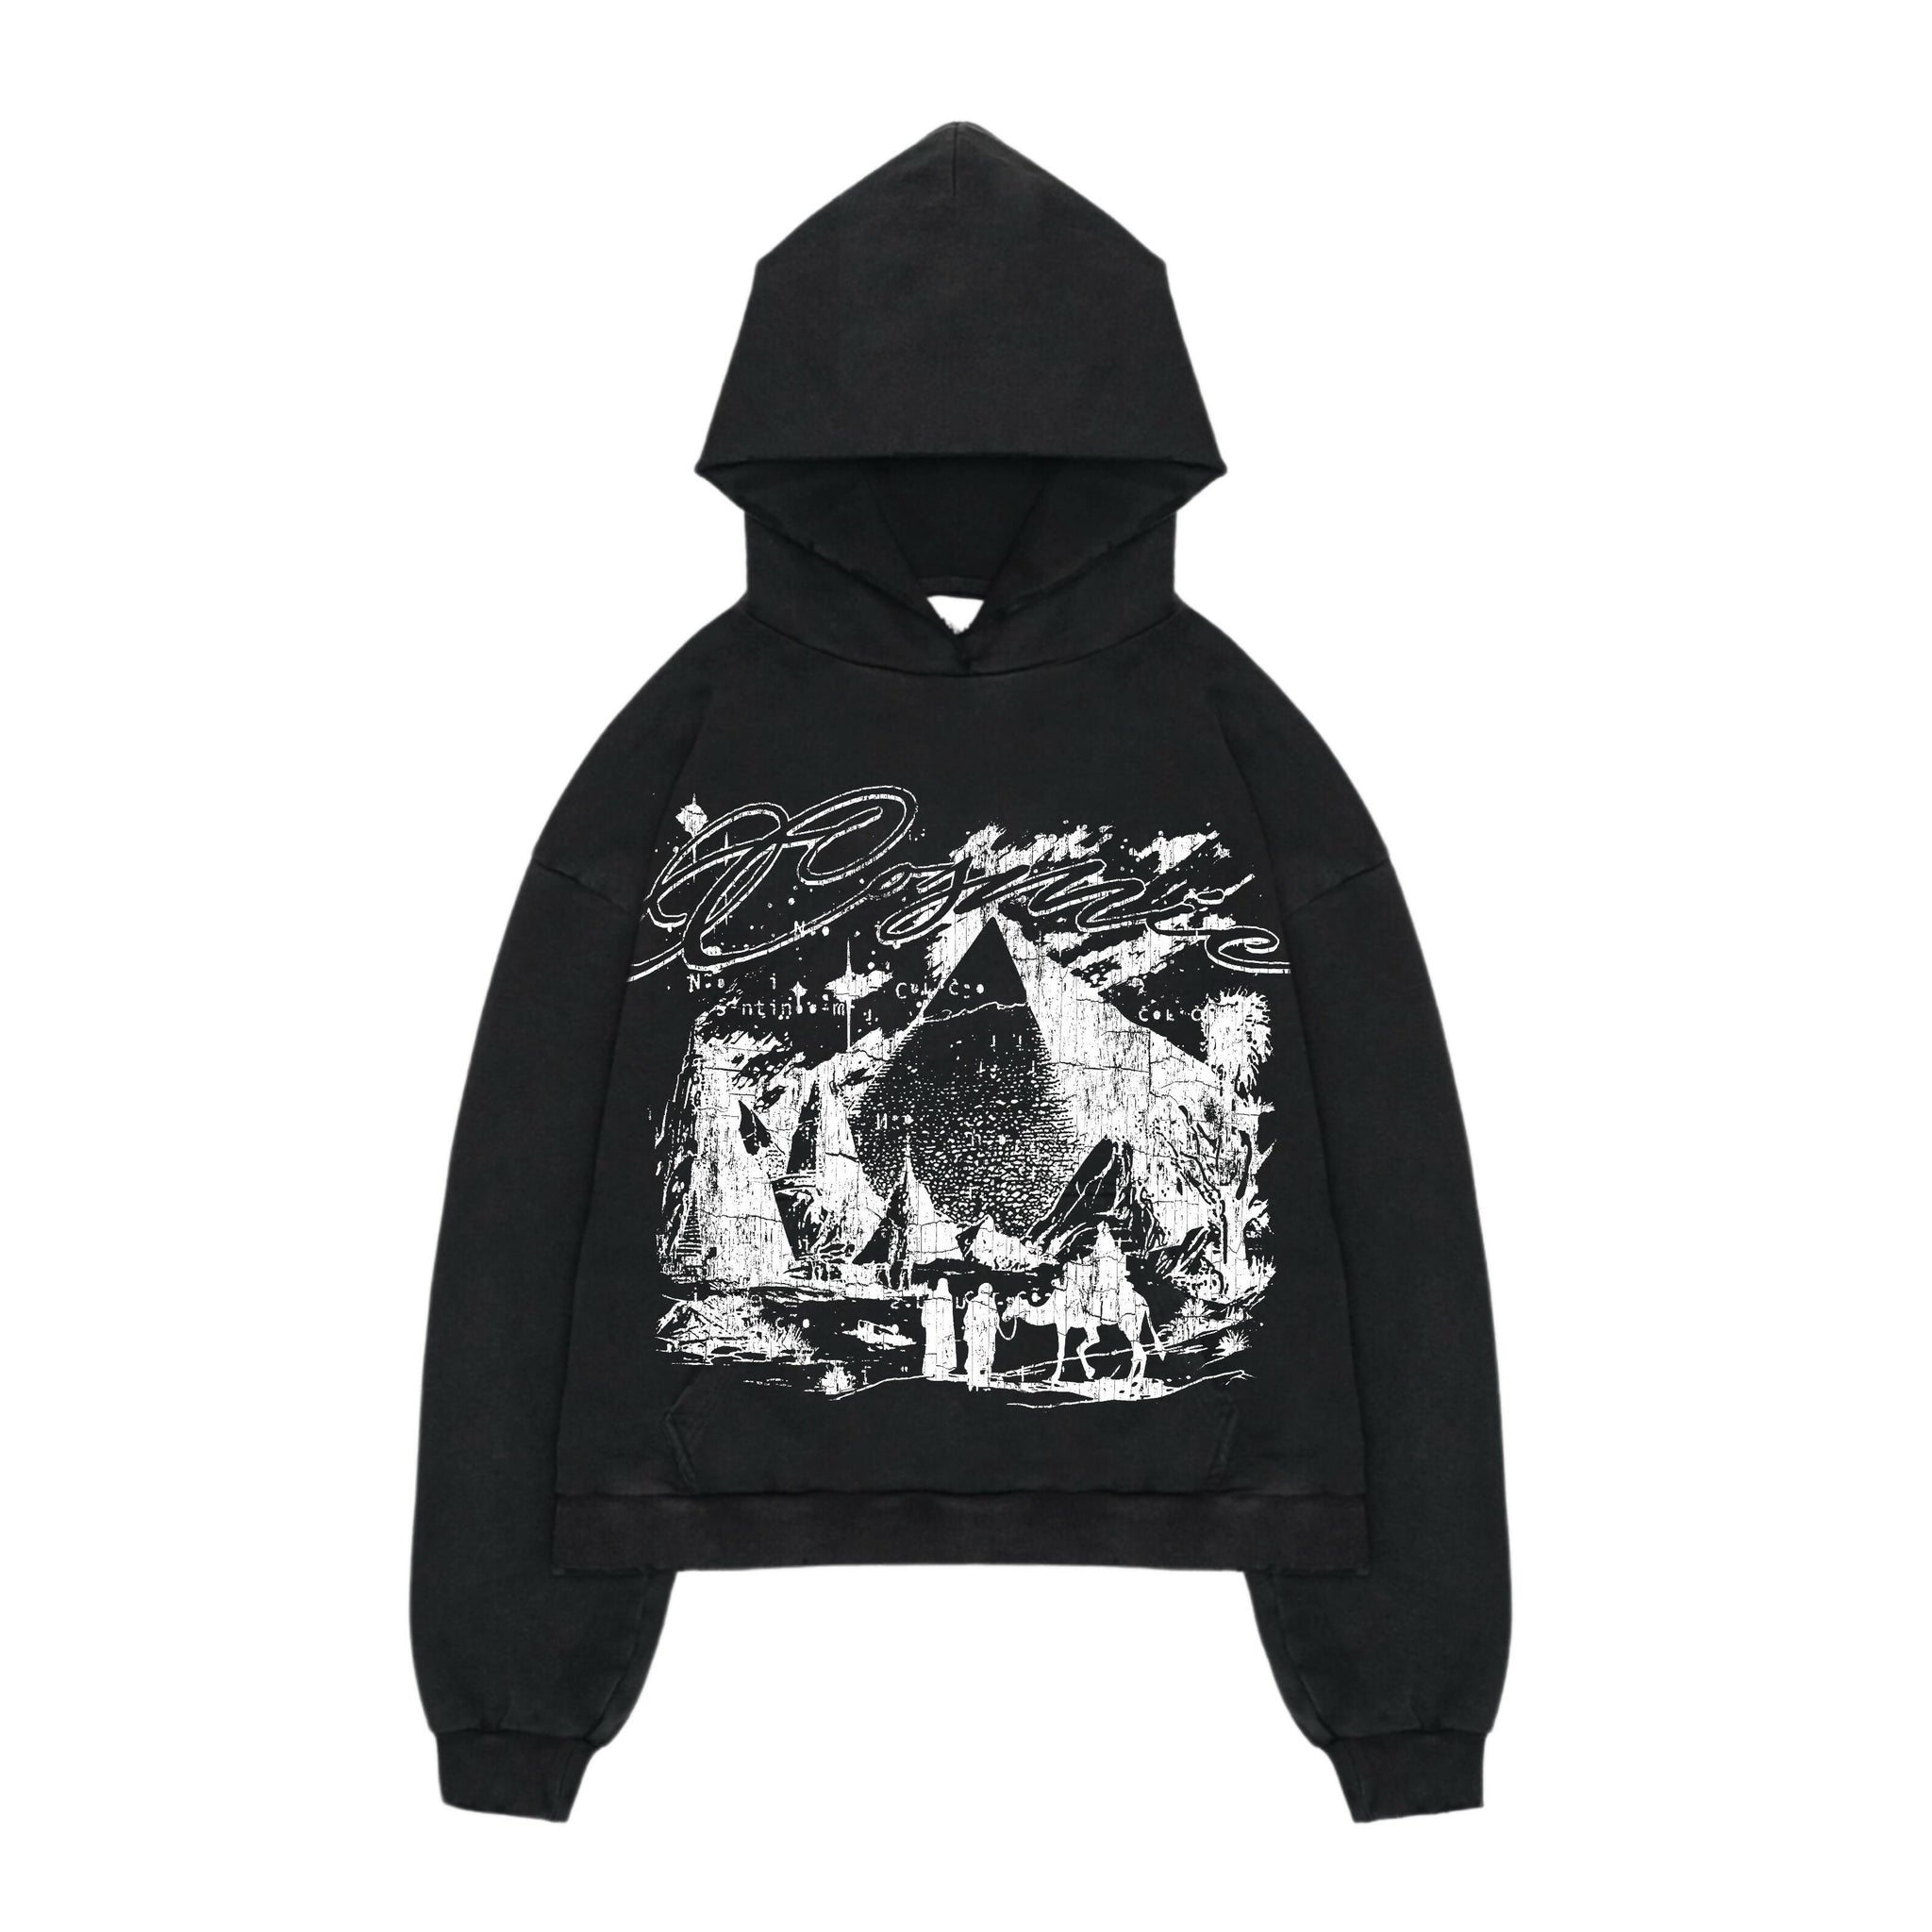 “Pyramids” hoodie